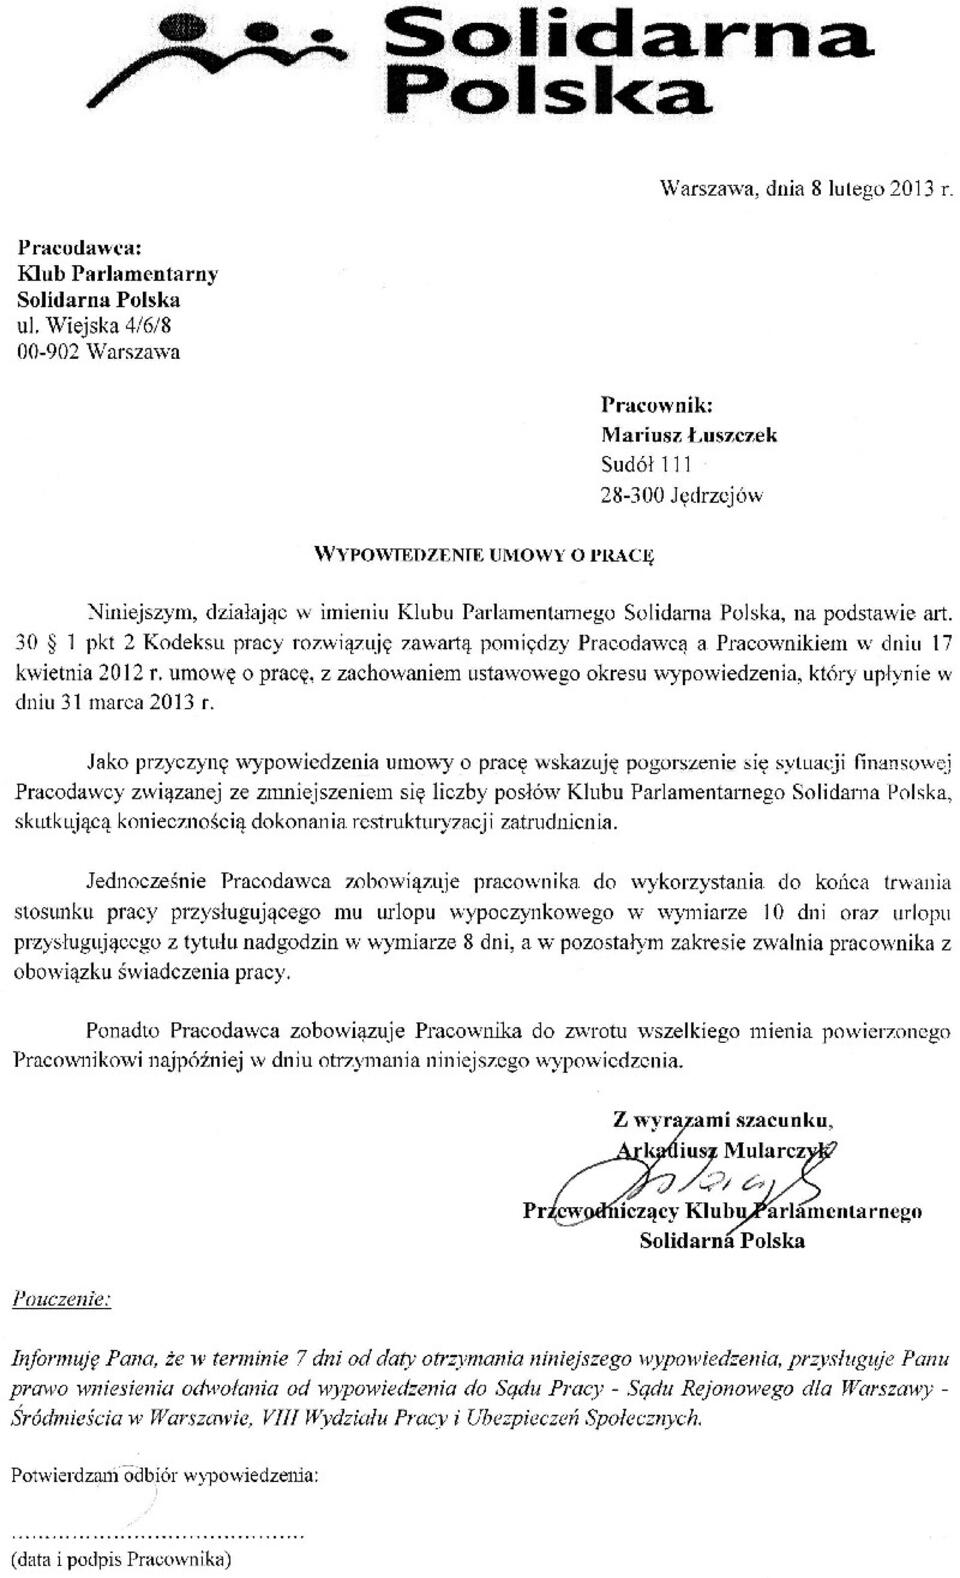 Wypowiedzenie umowy o pracę międxzy Solidarną Polską a Mariuszem Łuszczkiem udostępnione nam przez zainteresowanego.